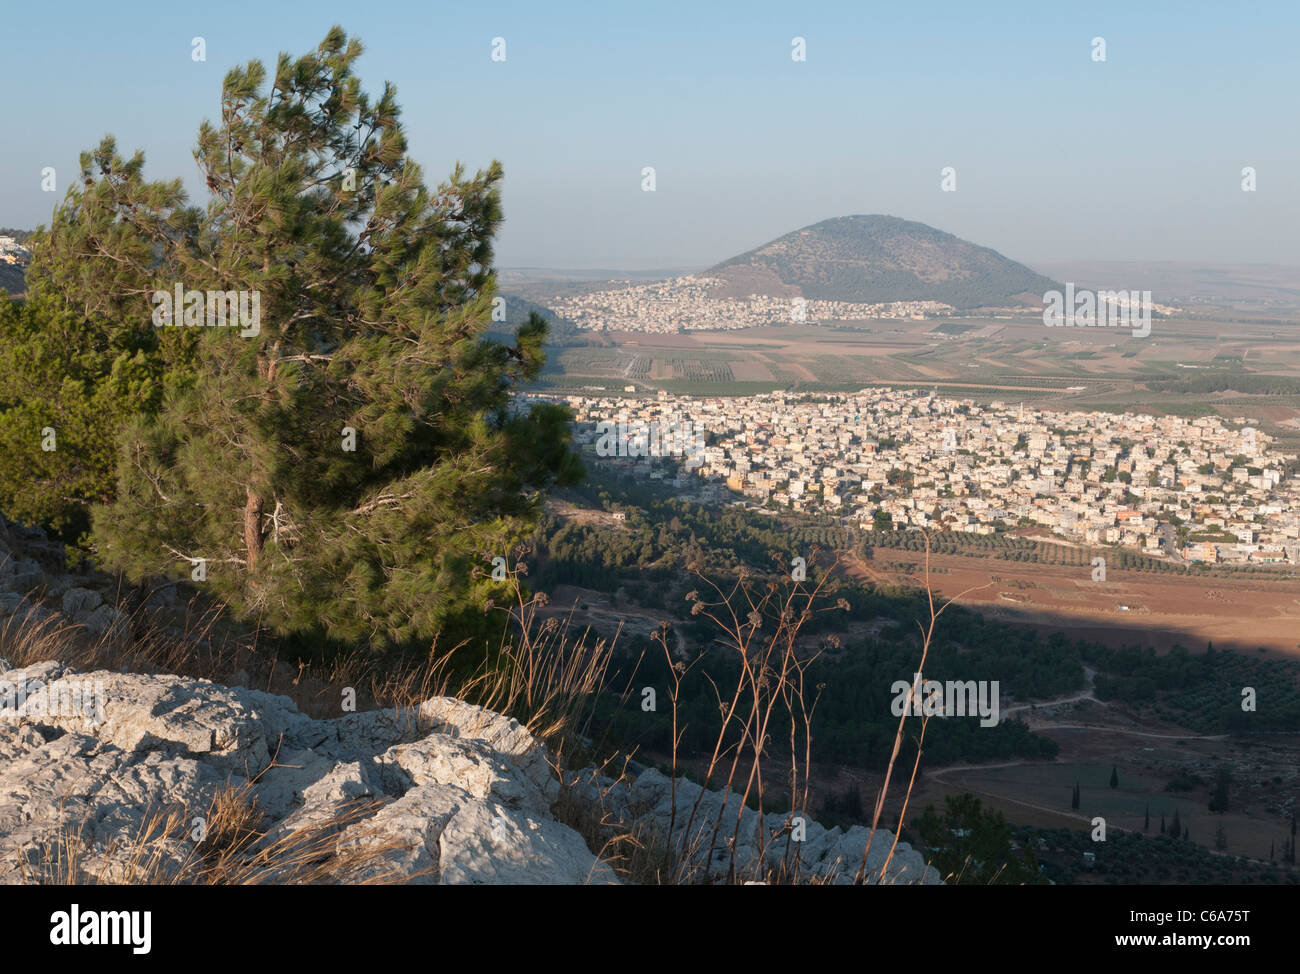 Monte precipicio con vista hacia el monte Tabor. Nazaret. Israel Foto de stock